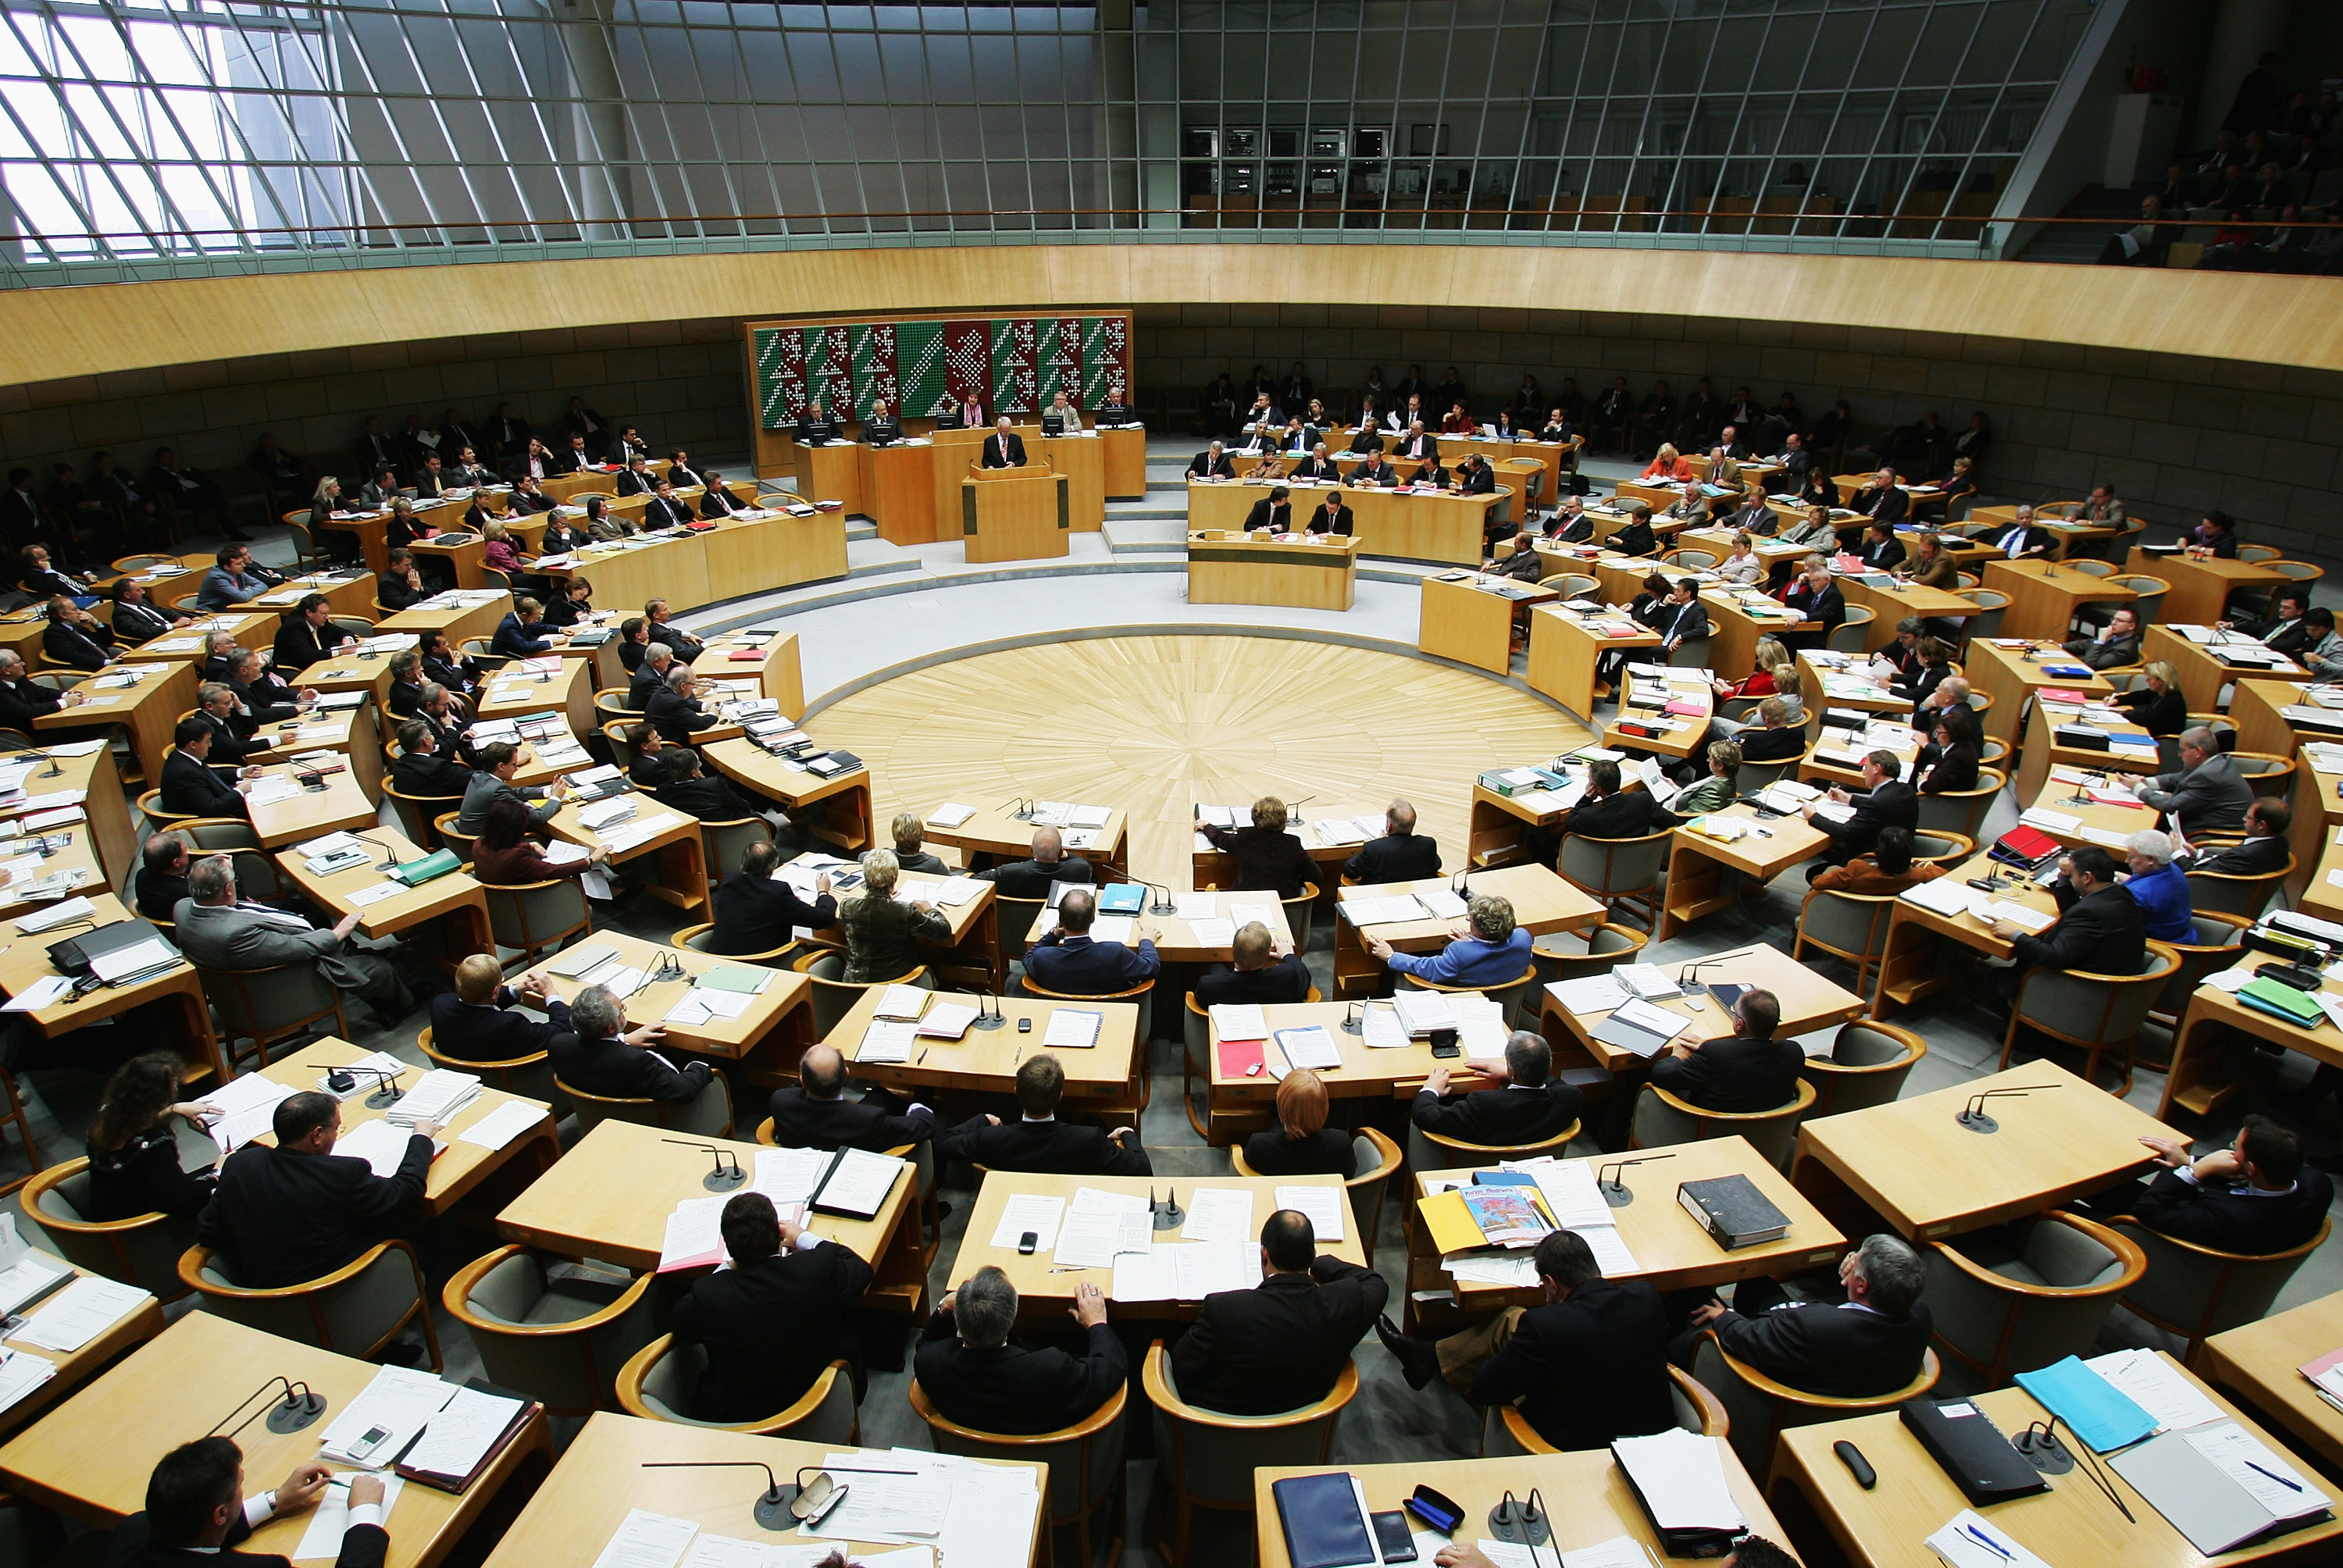 NRW-Minister schwören Eid nun nicht mehr auf „deutsches Volk“